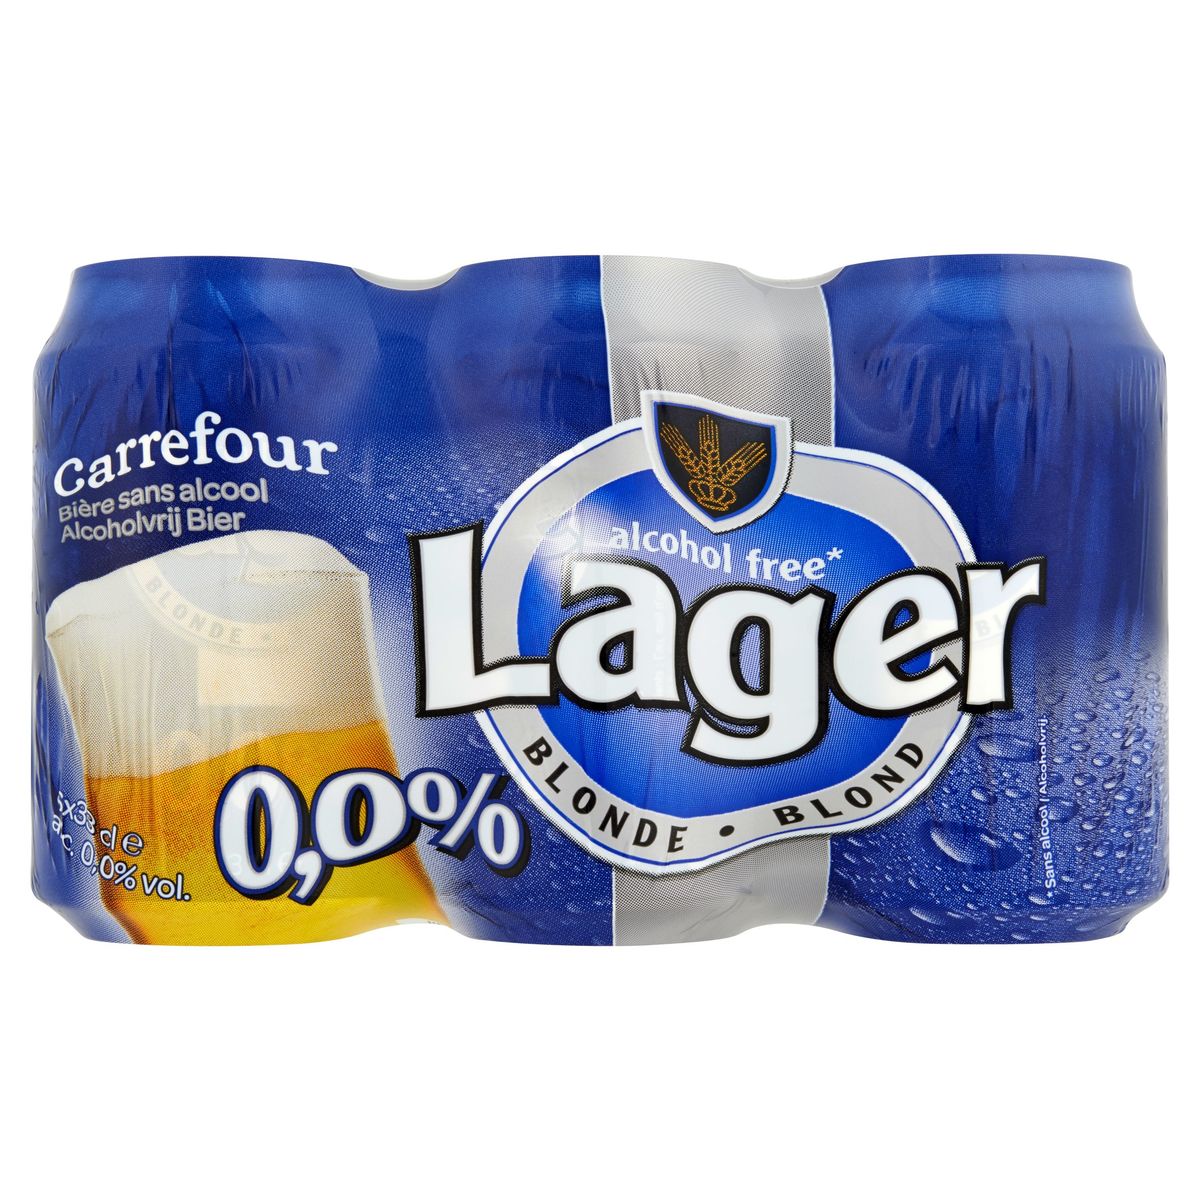 Carrefour Lager Blonde Bière sans Alcool 6 x 33 cl